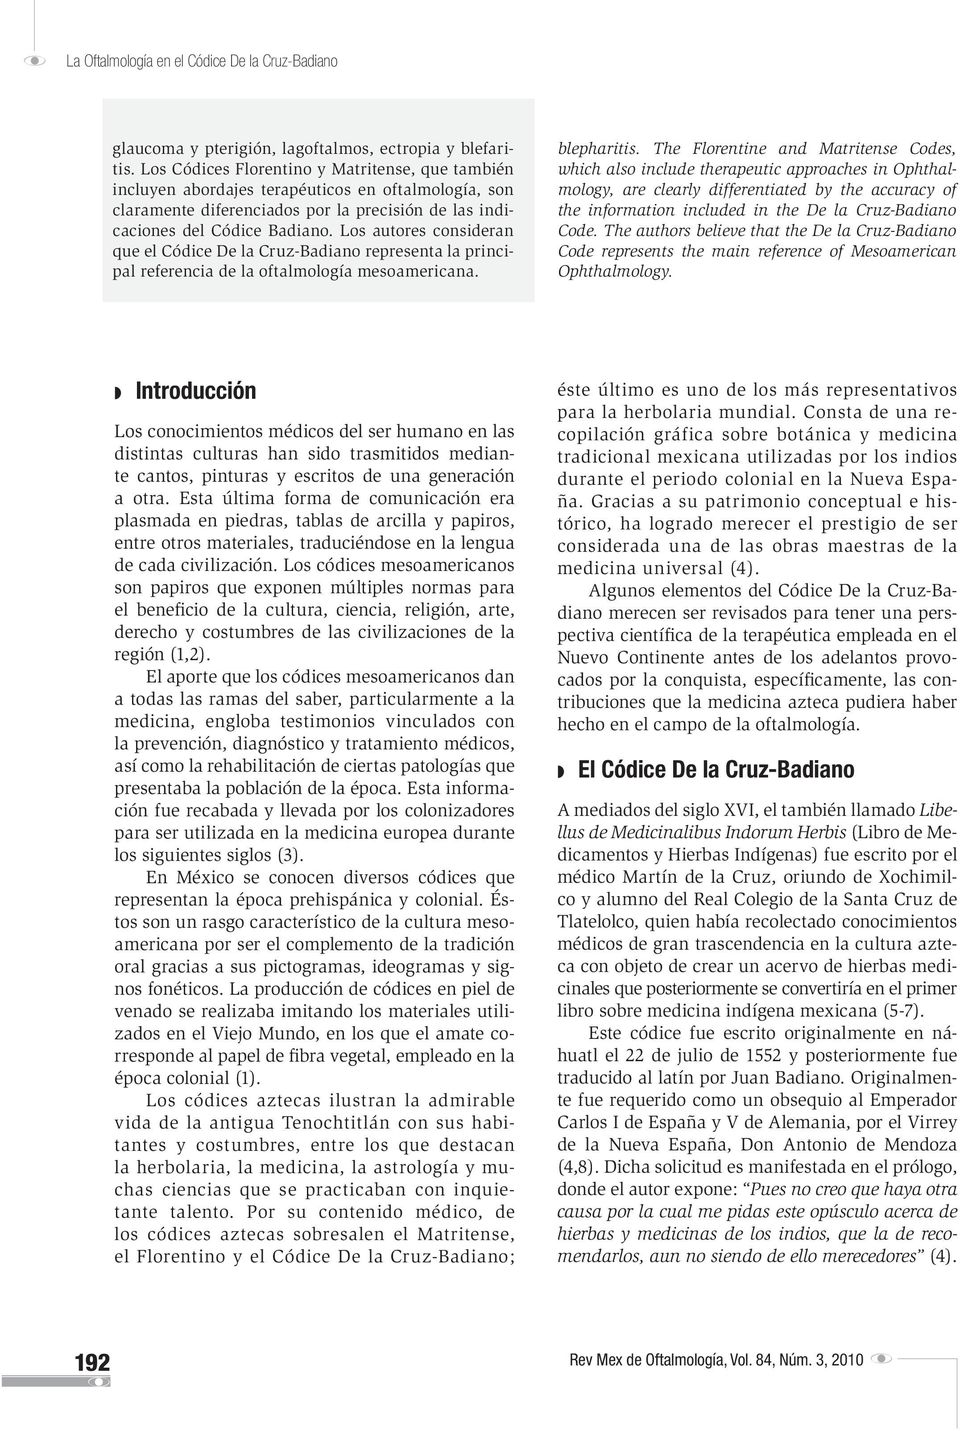 Los autores consideran que el Códice De la Cruz-Badiano representa la principal referencia de la oftalmología mesoamericana. blepharitis.